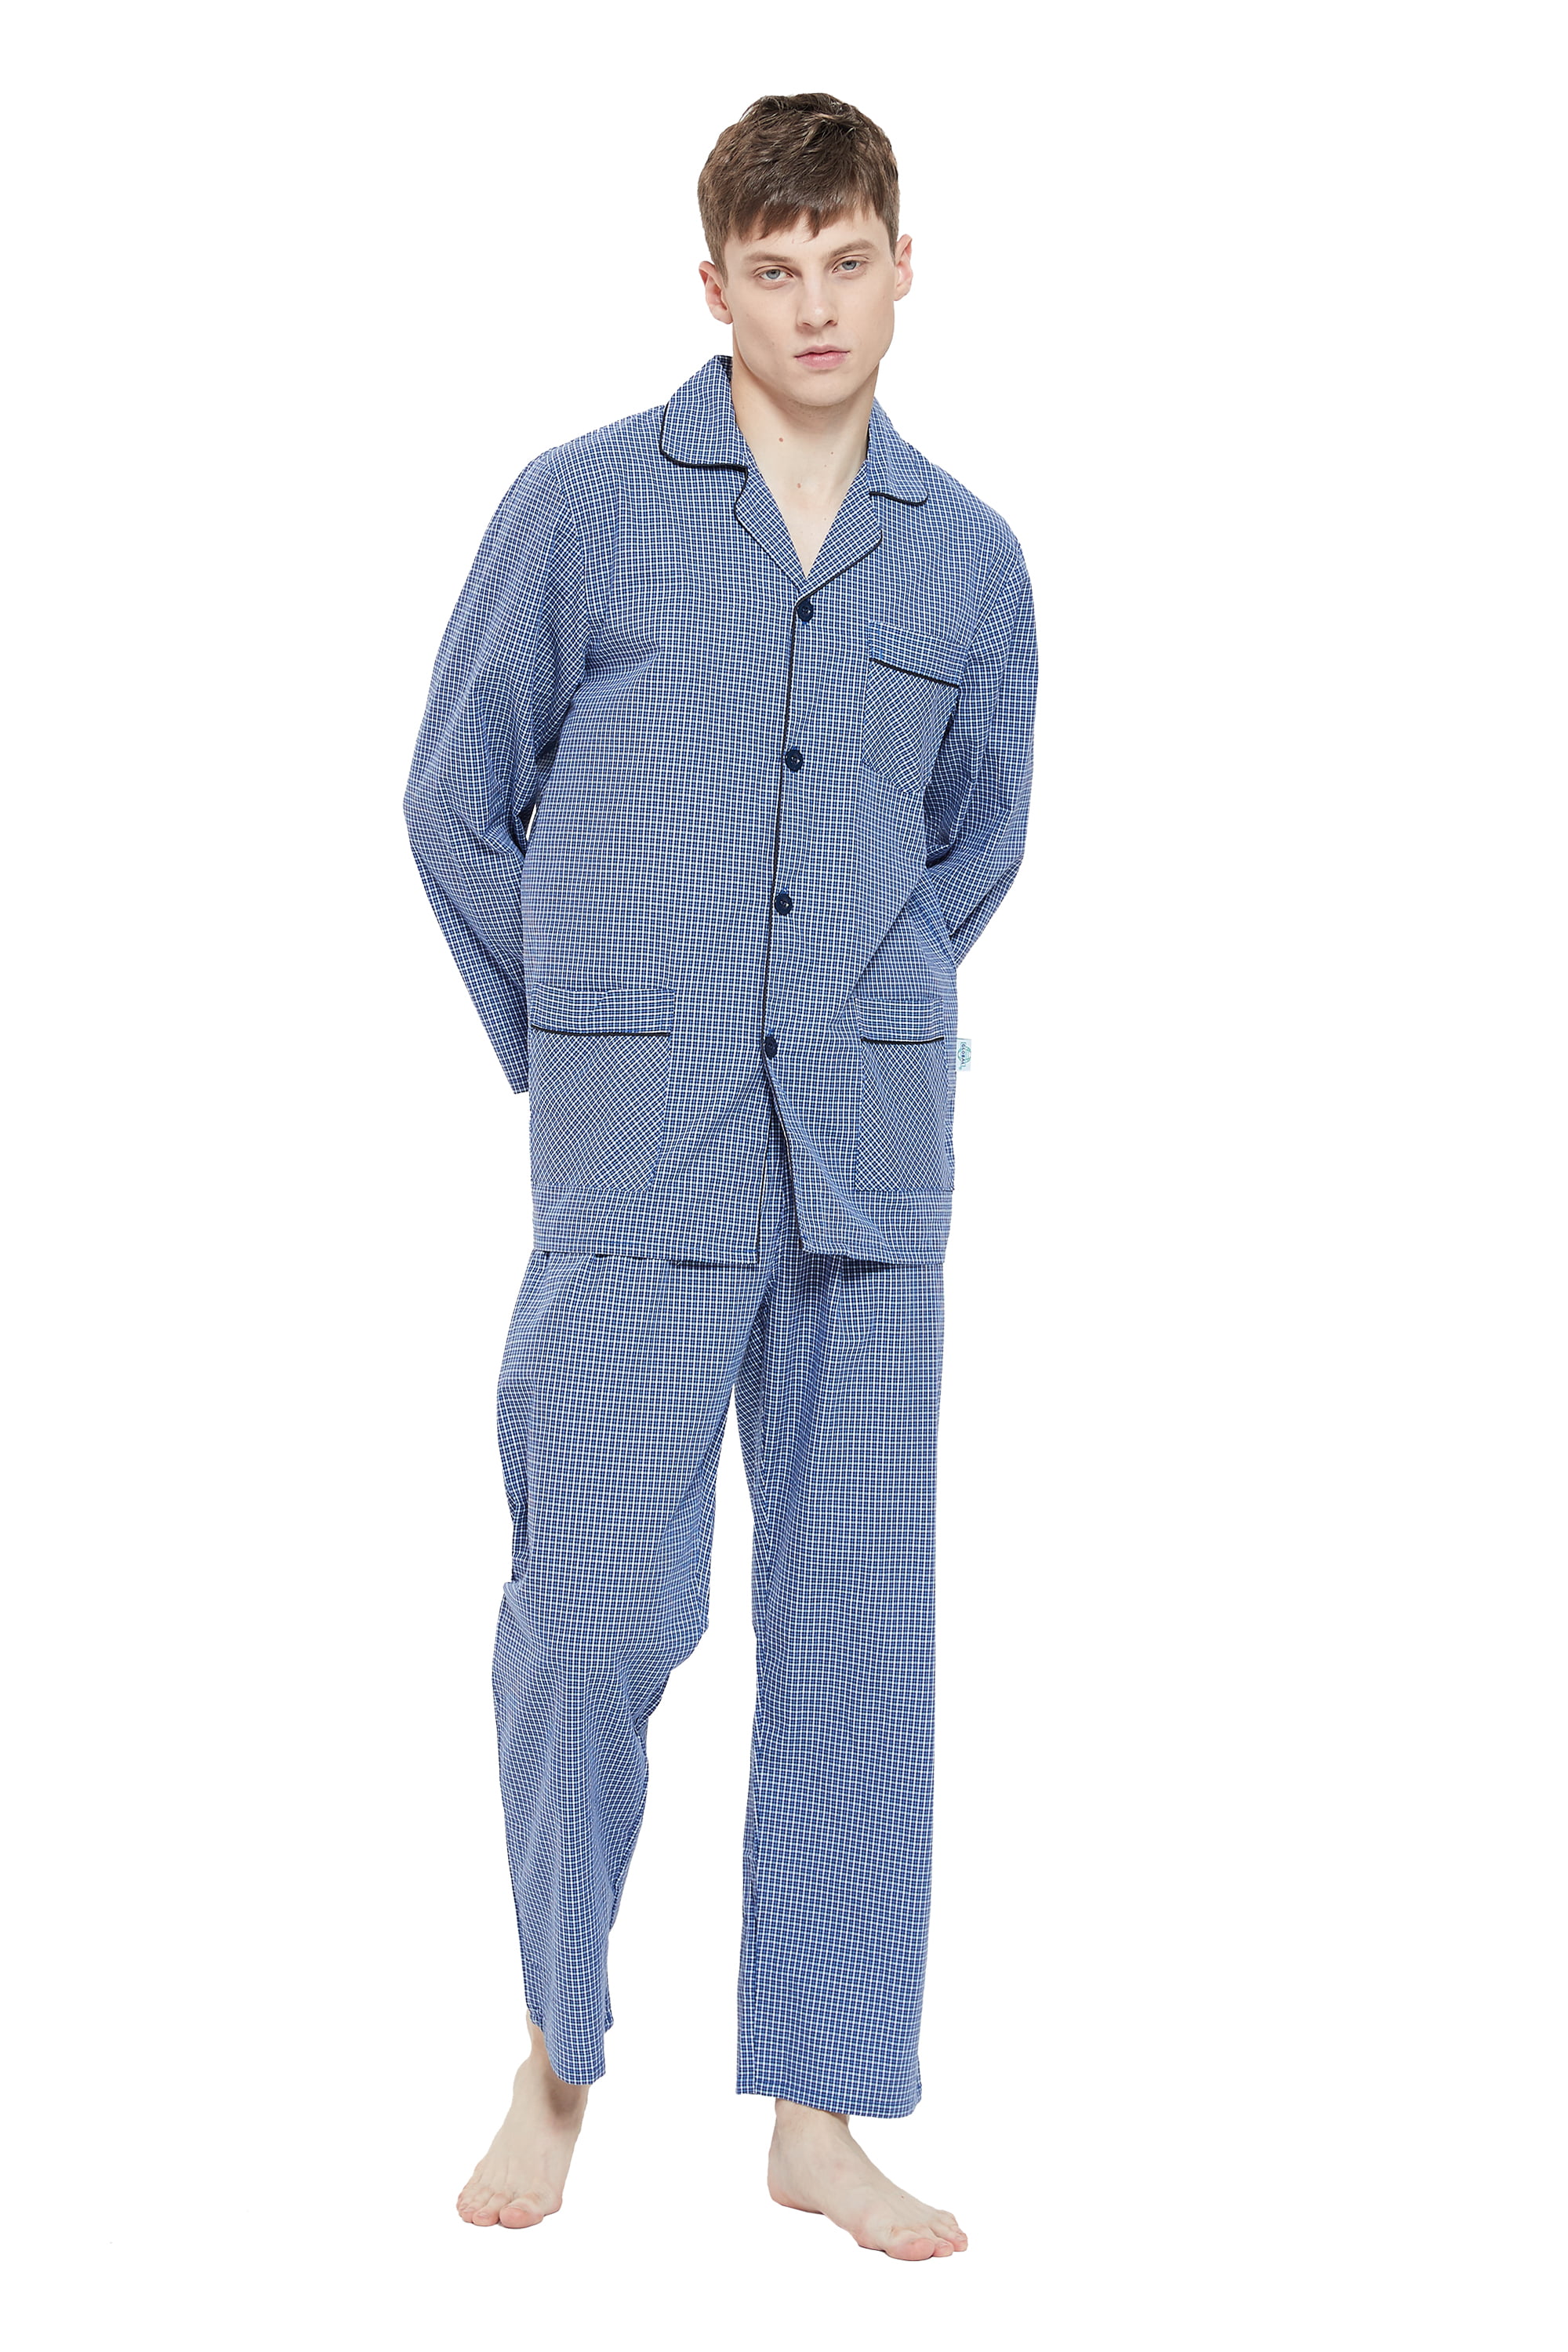 Made in The USA Women's Cropped Nursing/Maternity Pajama Set Majamas Breakfast PJ 